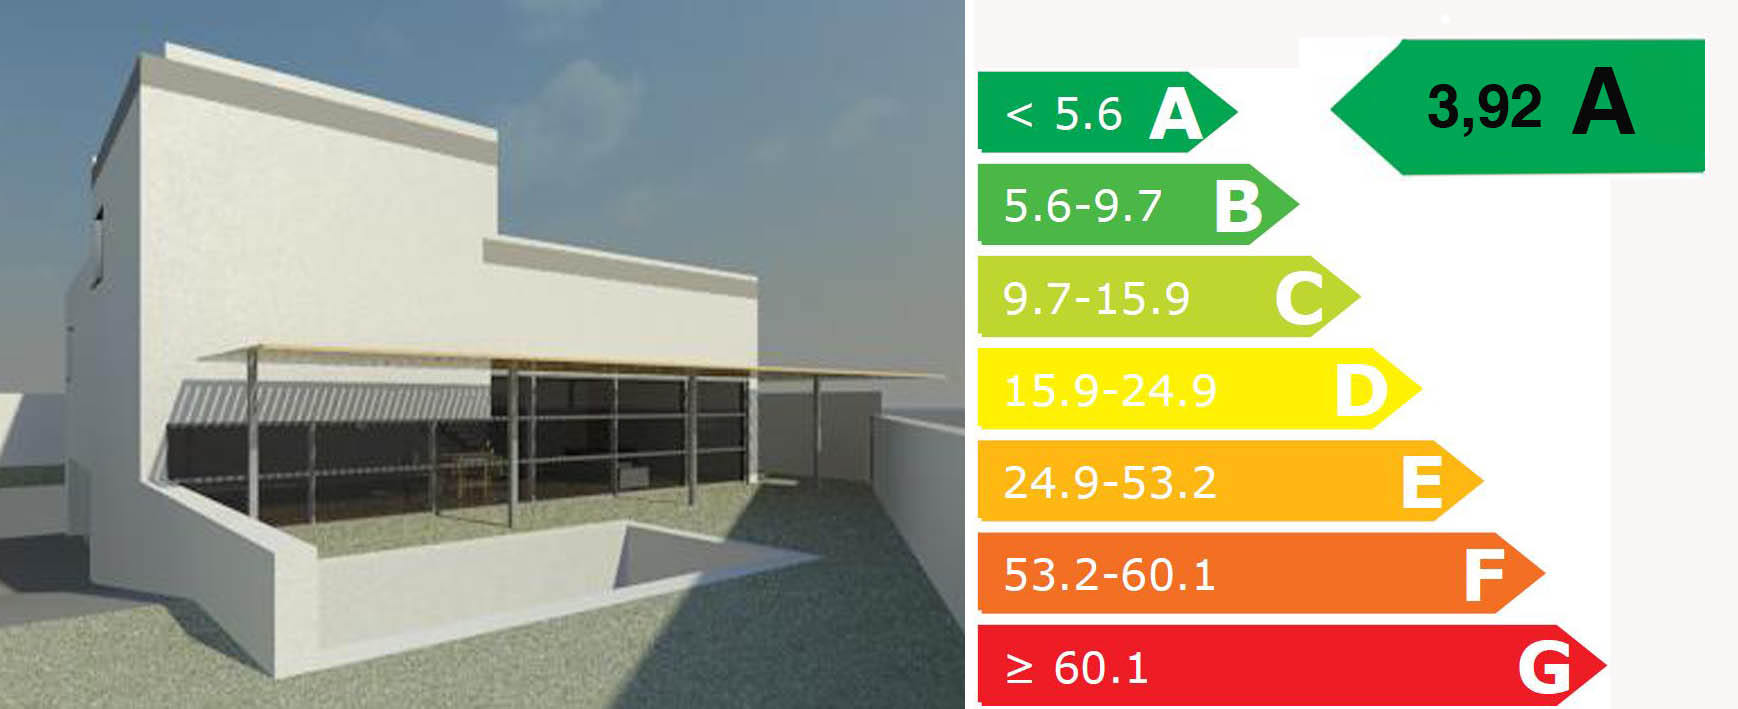 Imagen ejemplo de un edificio y la escala de eficiencia energética de A hasta G, señalando la eficiencia energética de dicho ejemplo en A con un valor de 3,92